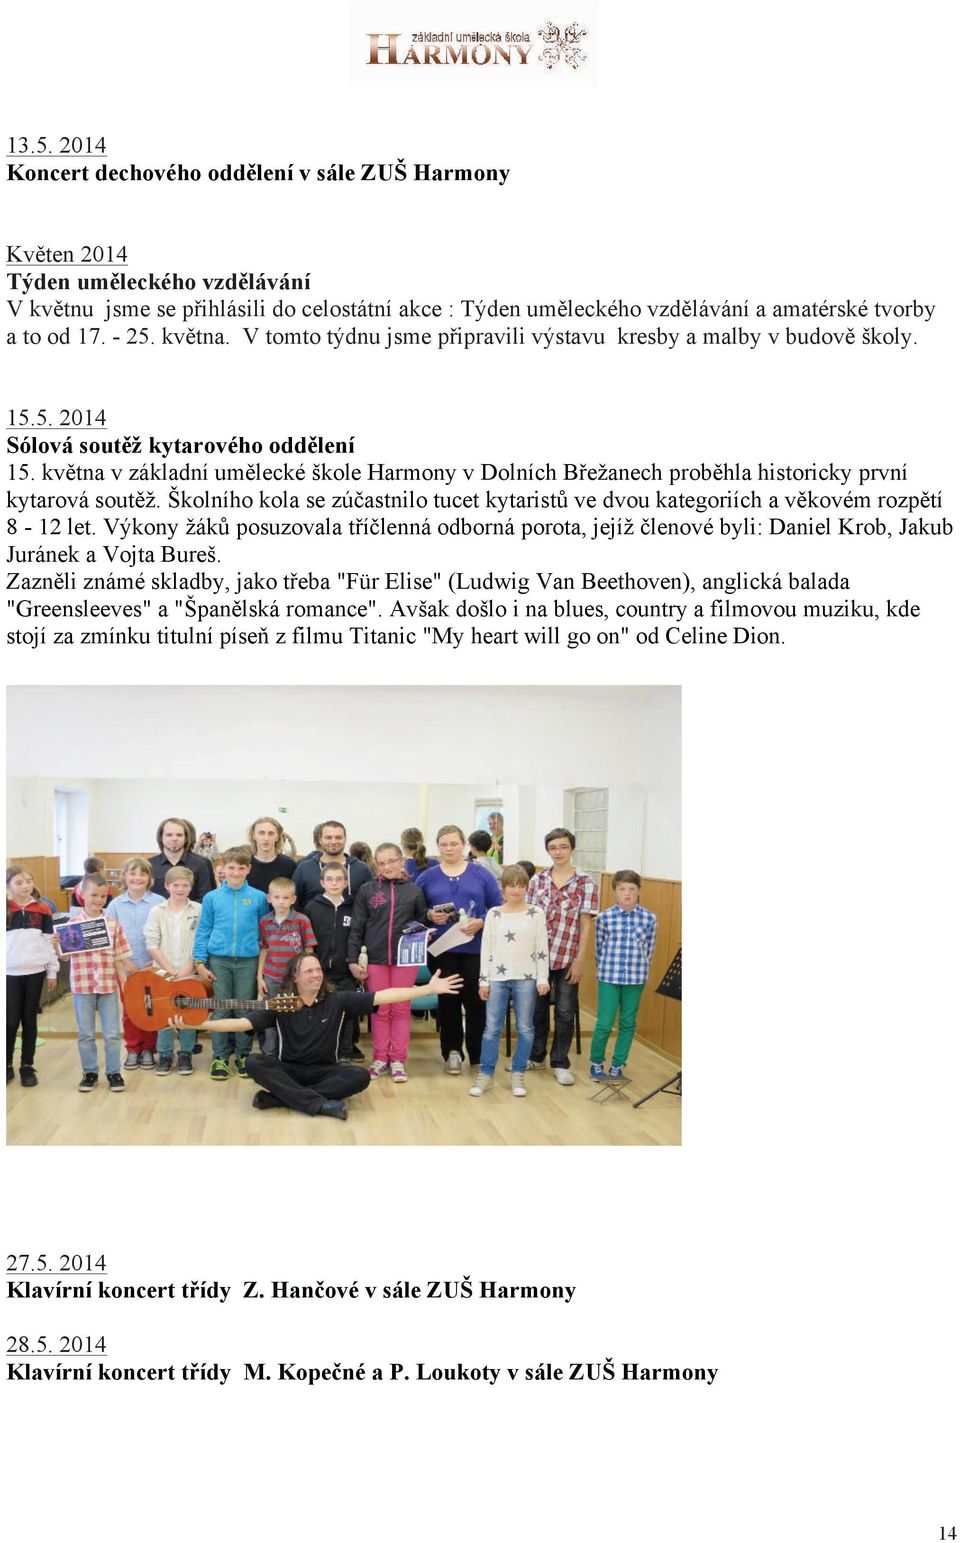 května v základní umělecké škole Harmony v Dolních Břežanech proběhla historicky první kytarová soutěž. Školního kola se zúčastnilo tucet kytaristů ve dvou kategoriích a věkovém rozpětí 8-12 let.